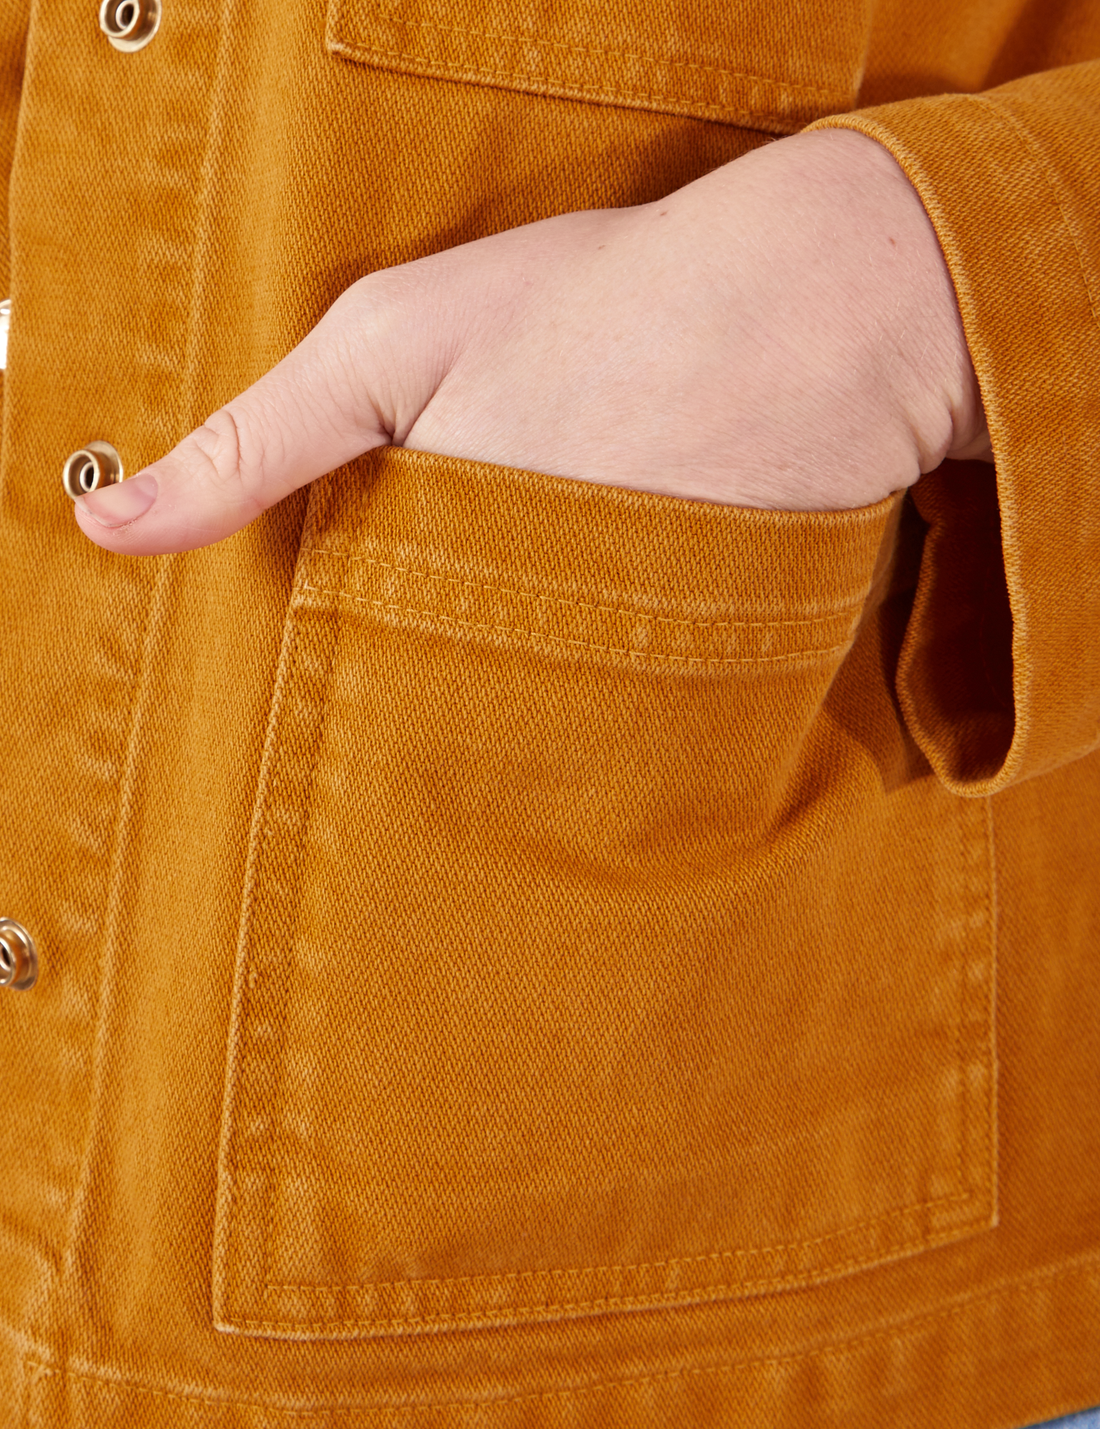 Denim Work Jacket in Spicy Mustard hand in bottom front pocket close up